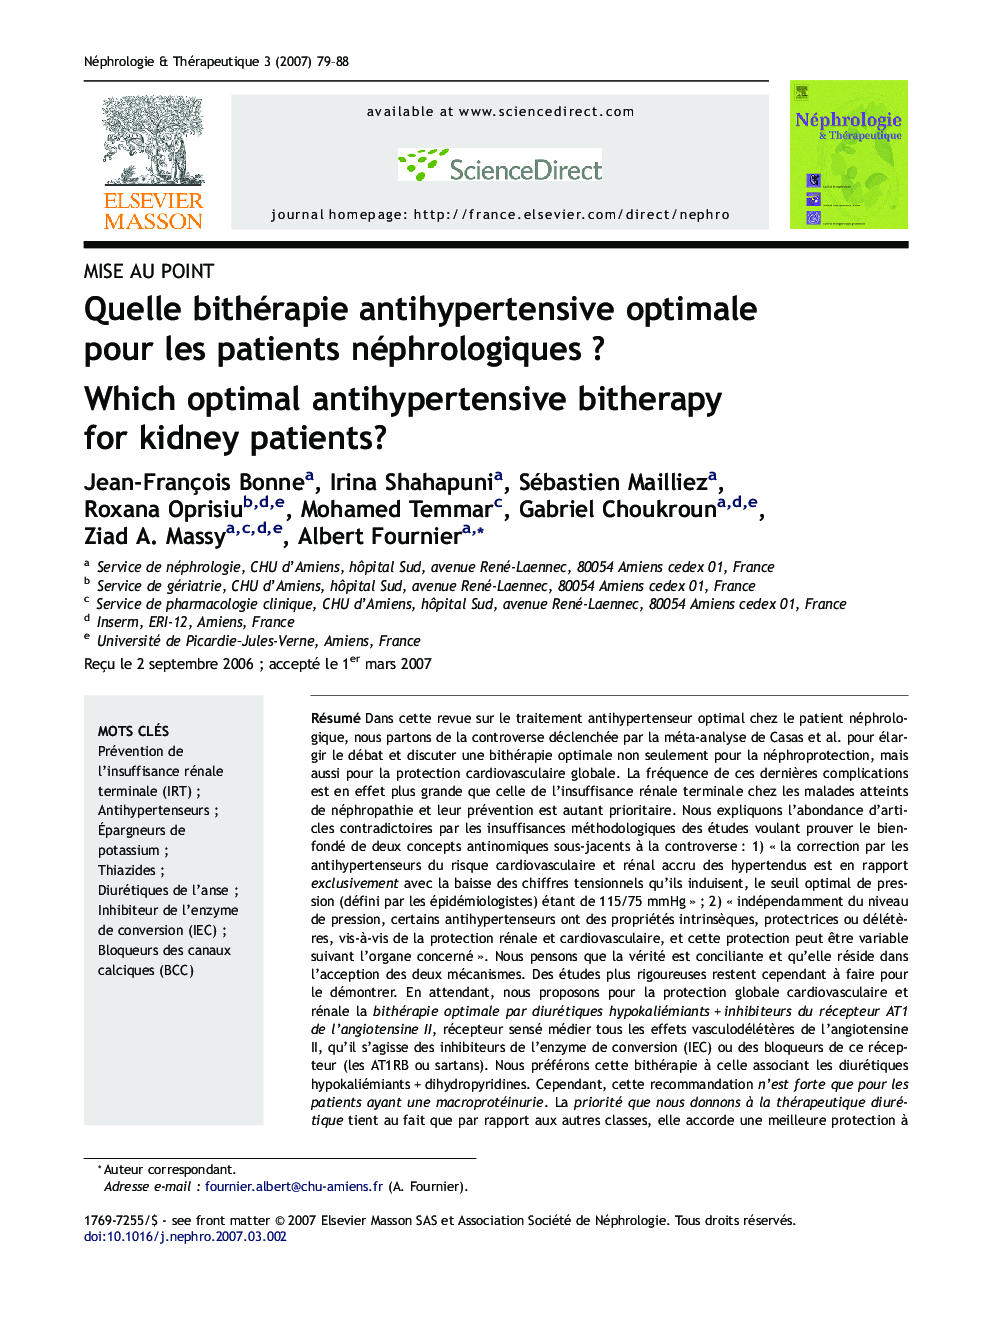 Quelle bithérapie antihypertensive optimale pour les patients néphrologiques ?